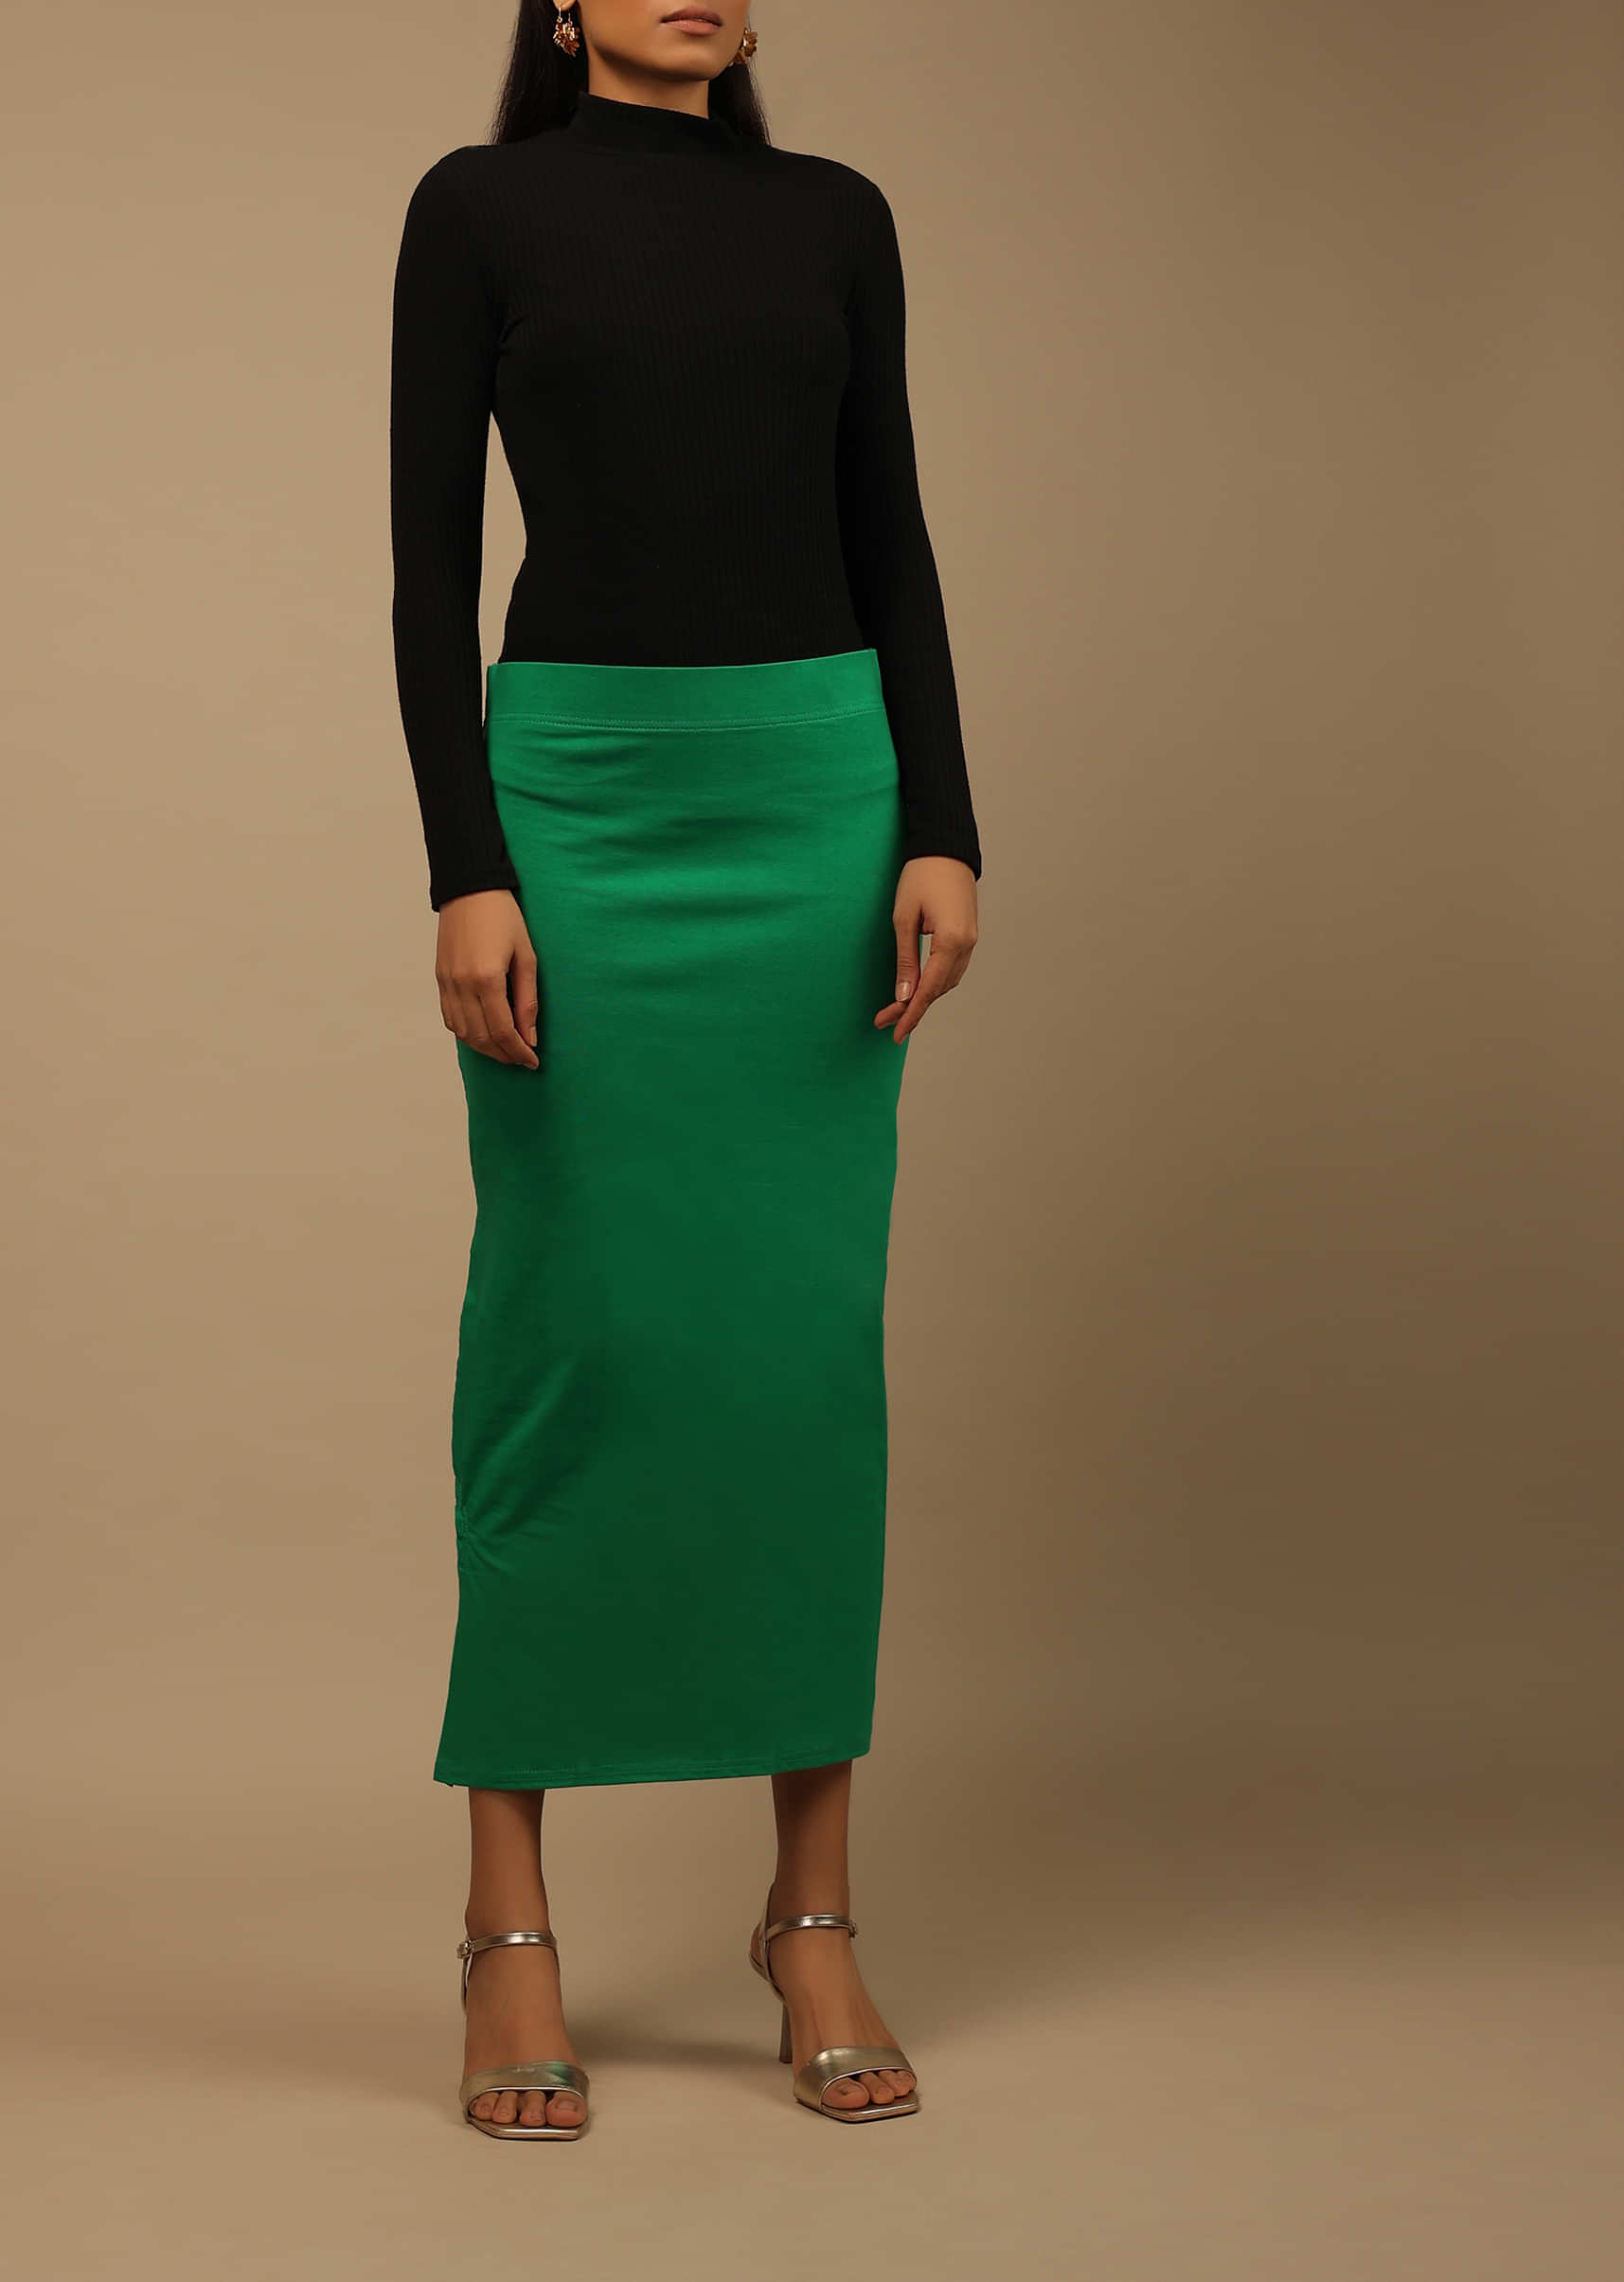 Buy Green Saree Petticoat Online